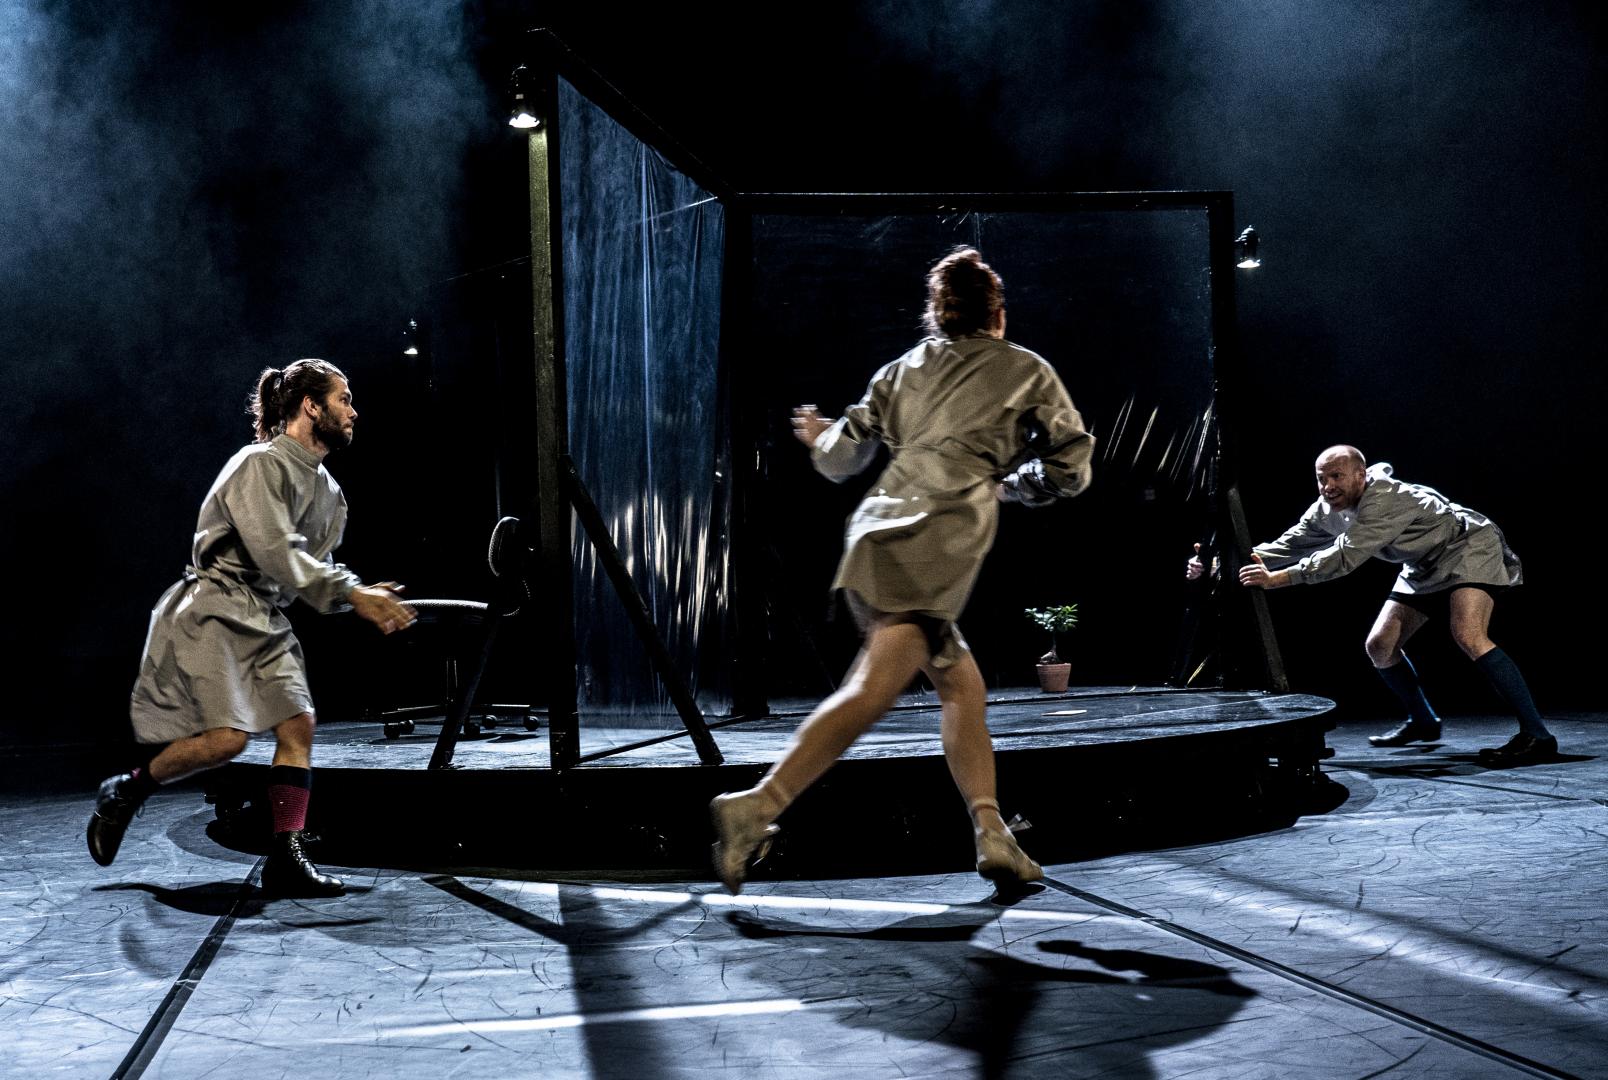 Drei Schauspielerinnen rennen im Kreis um einen drehbaren Bühnenaufbau, düsteres Licht